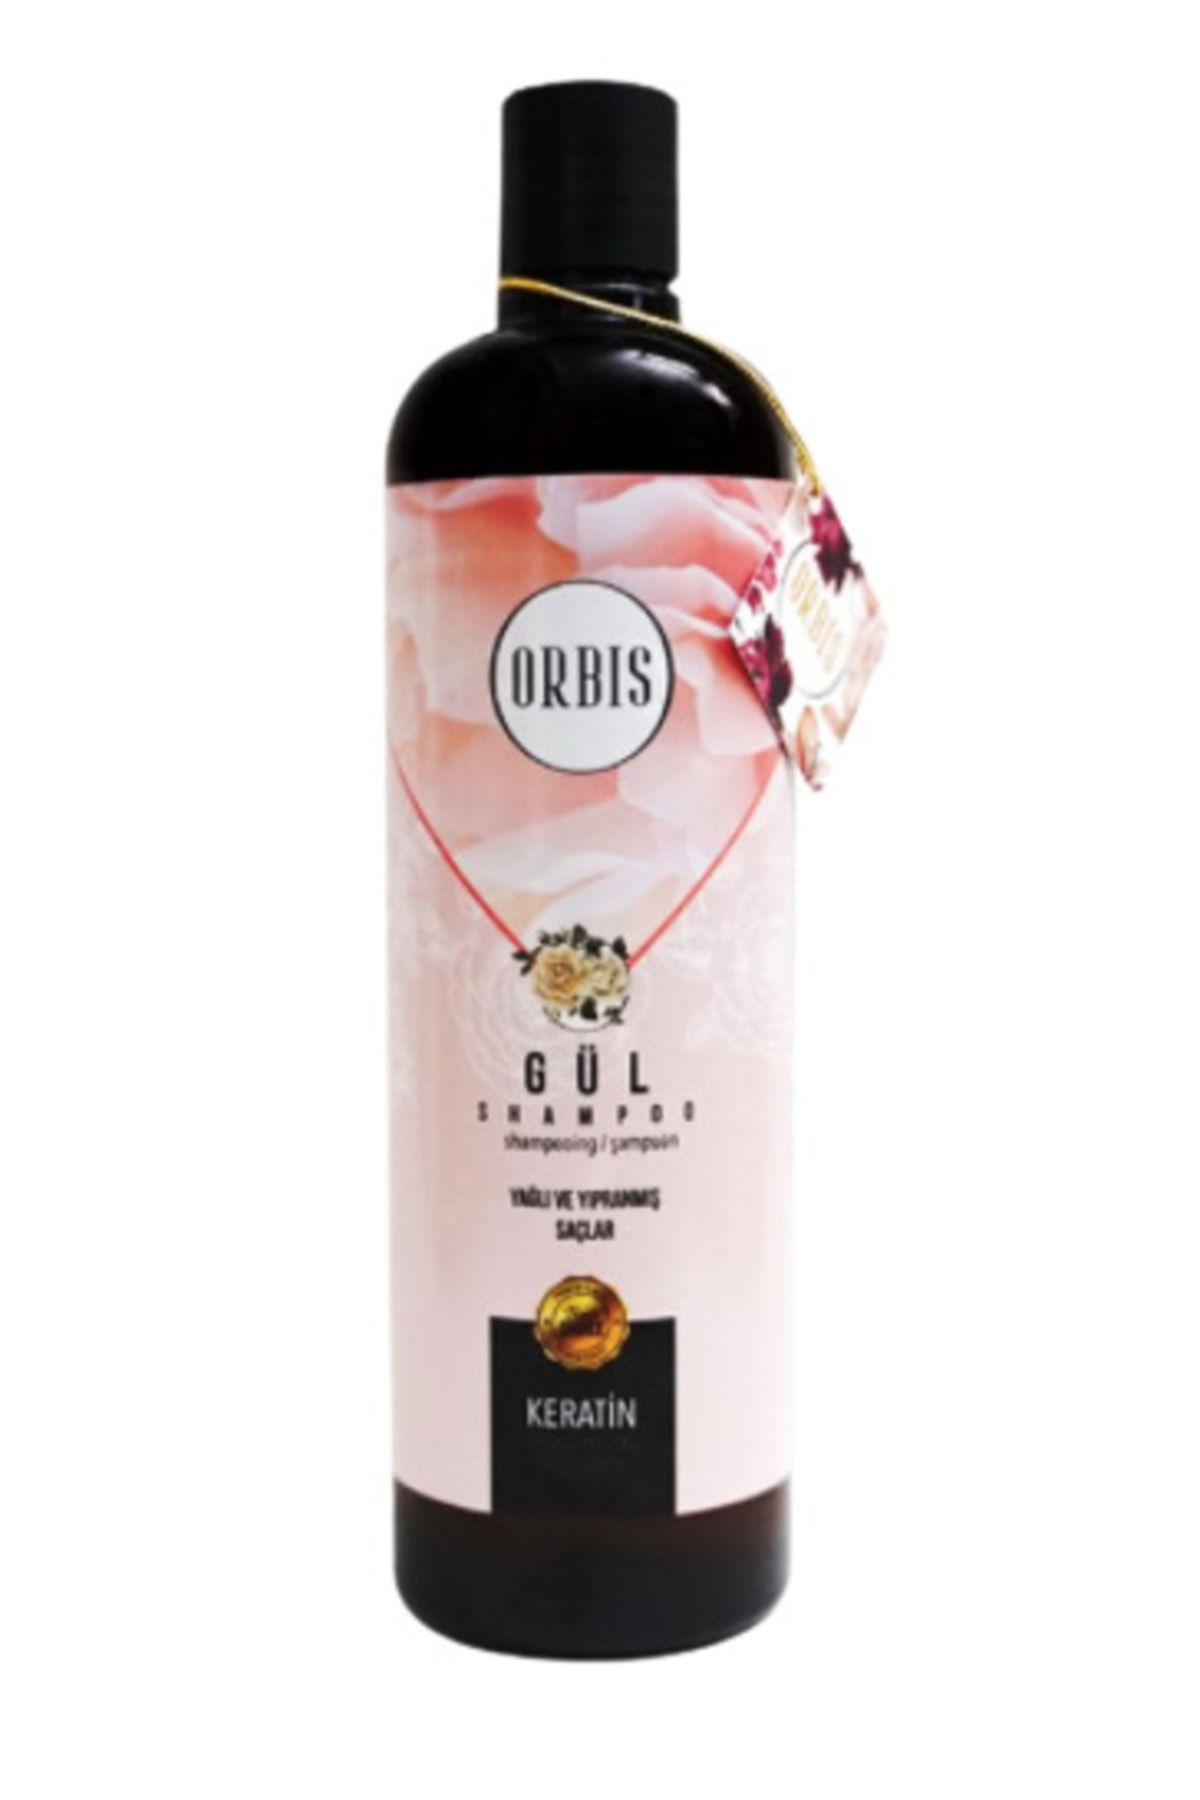 Orbis Şampuan Gül 700 ml